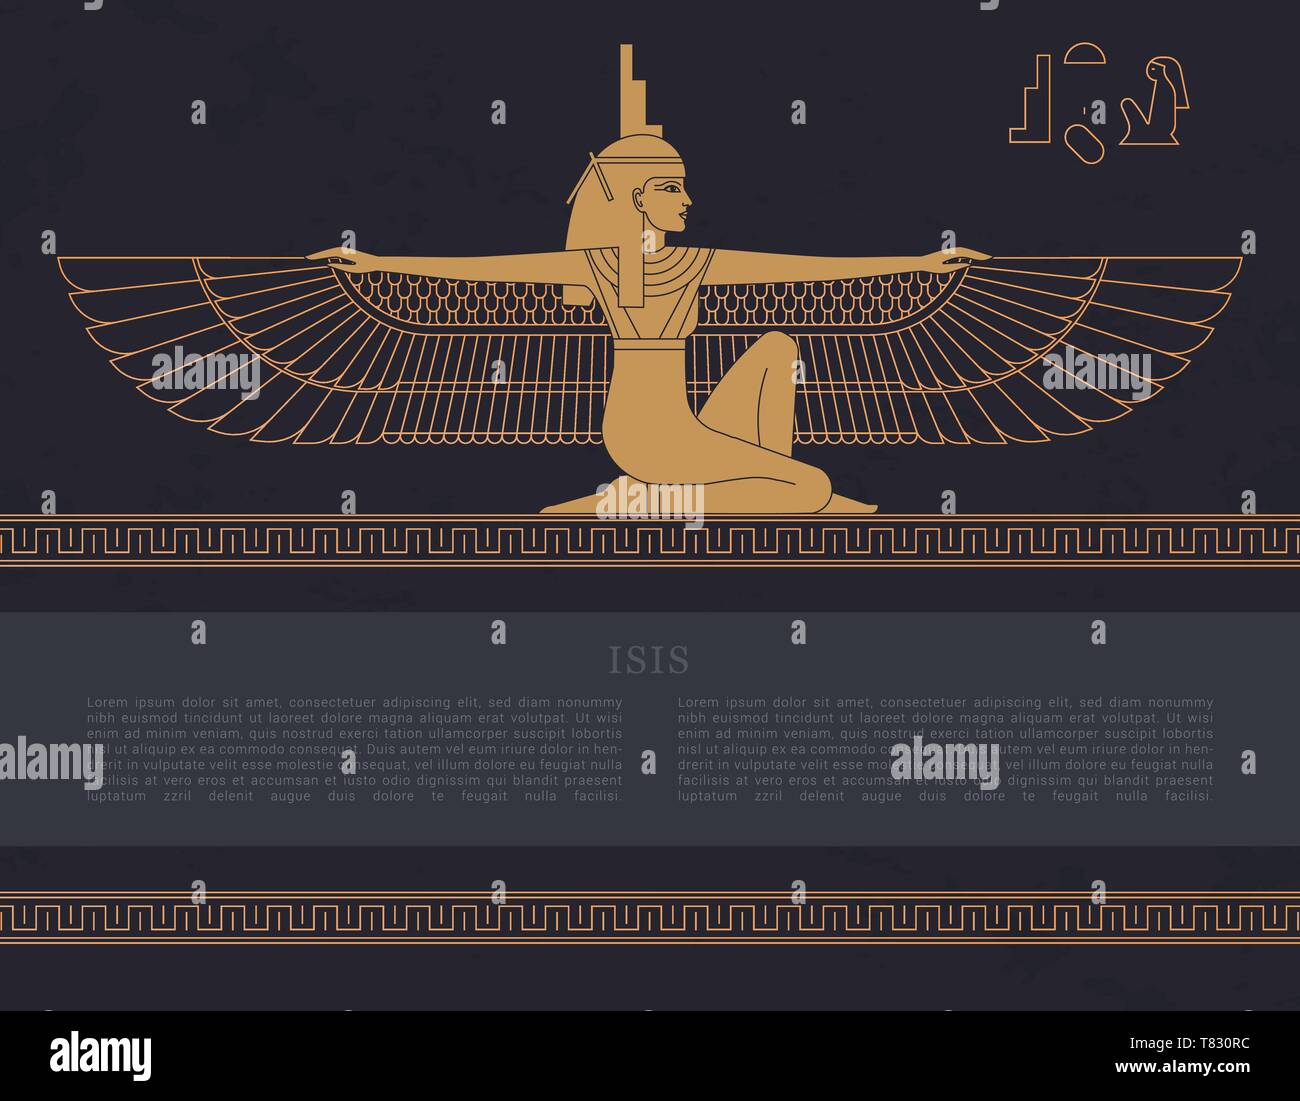 Modèle vecteur conception fertilité égyptienne déesse Isis isolé sur l'arrière-plan dessiné à la main à partir de pyramides égyptiennes, symbole de féminité et de marita Illustration de Vecteur